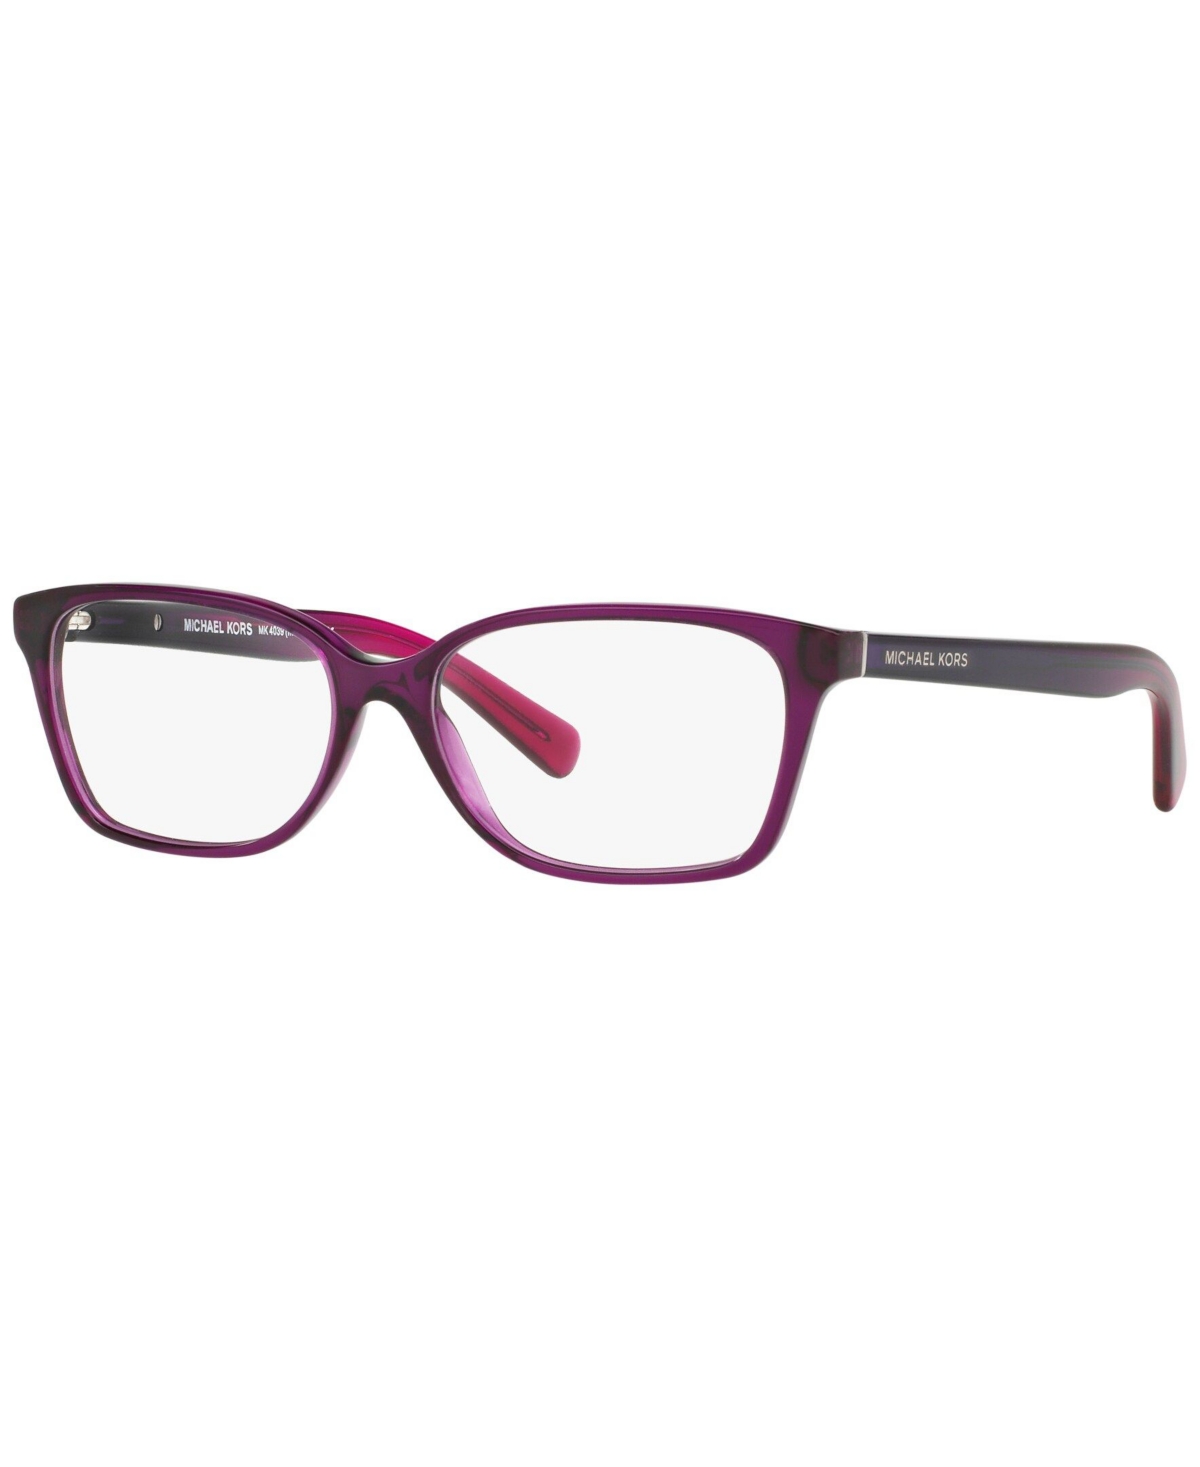 MK4039 Women's Rectangle Eyeglasses - Trans Purp